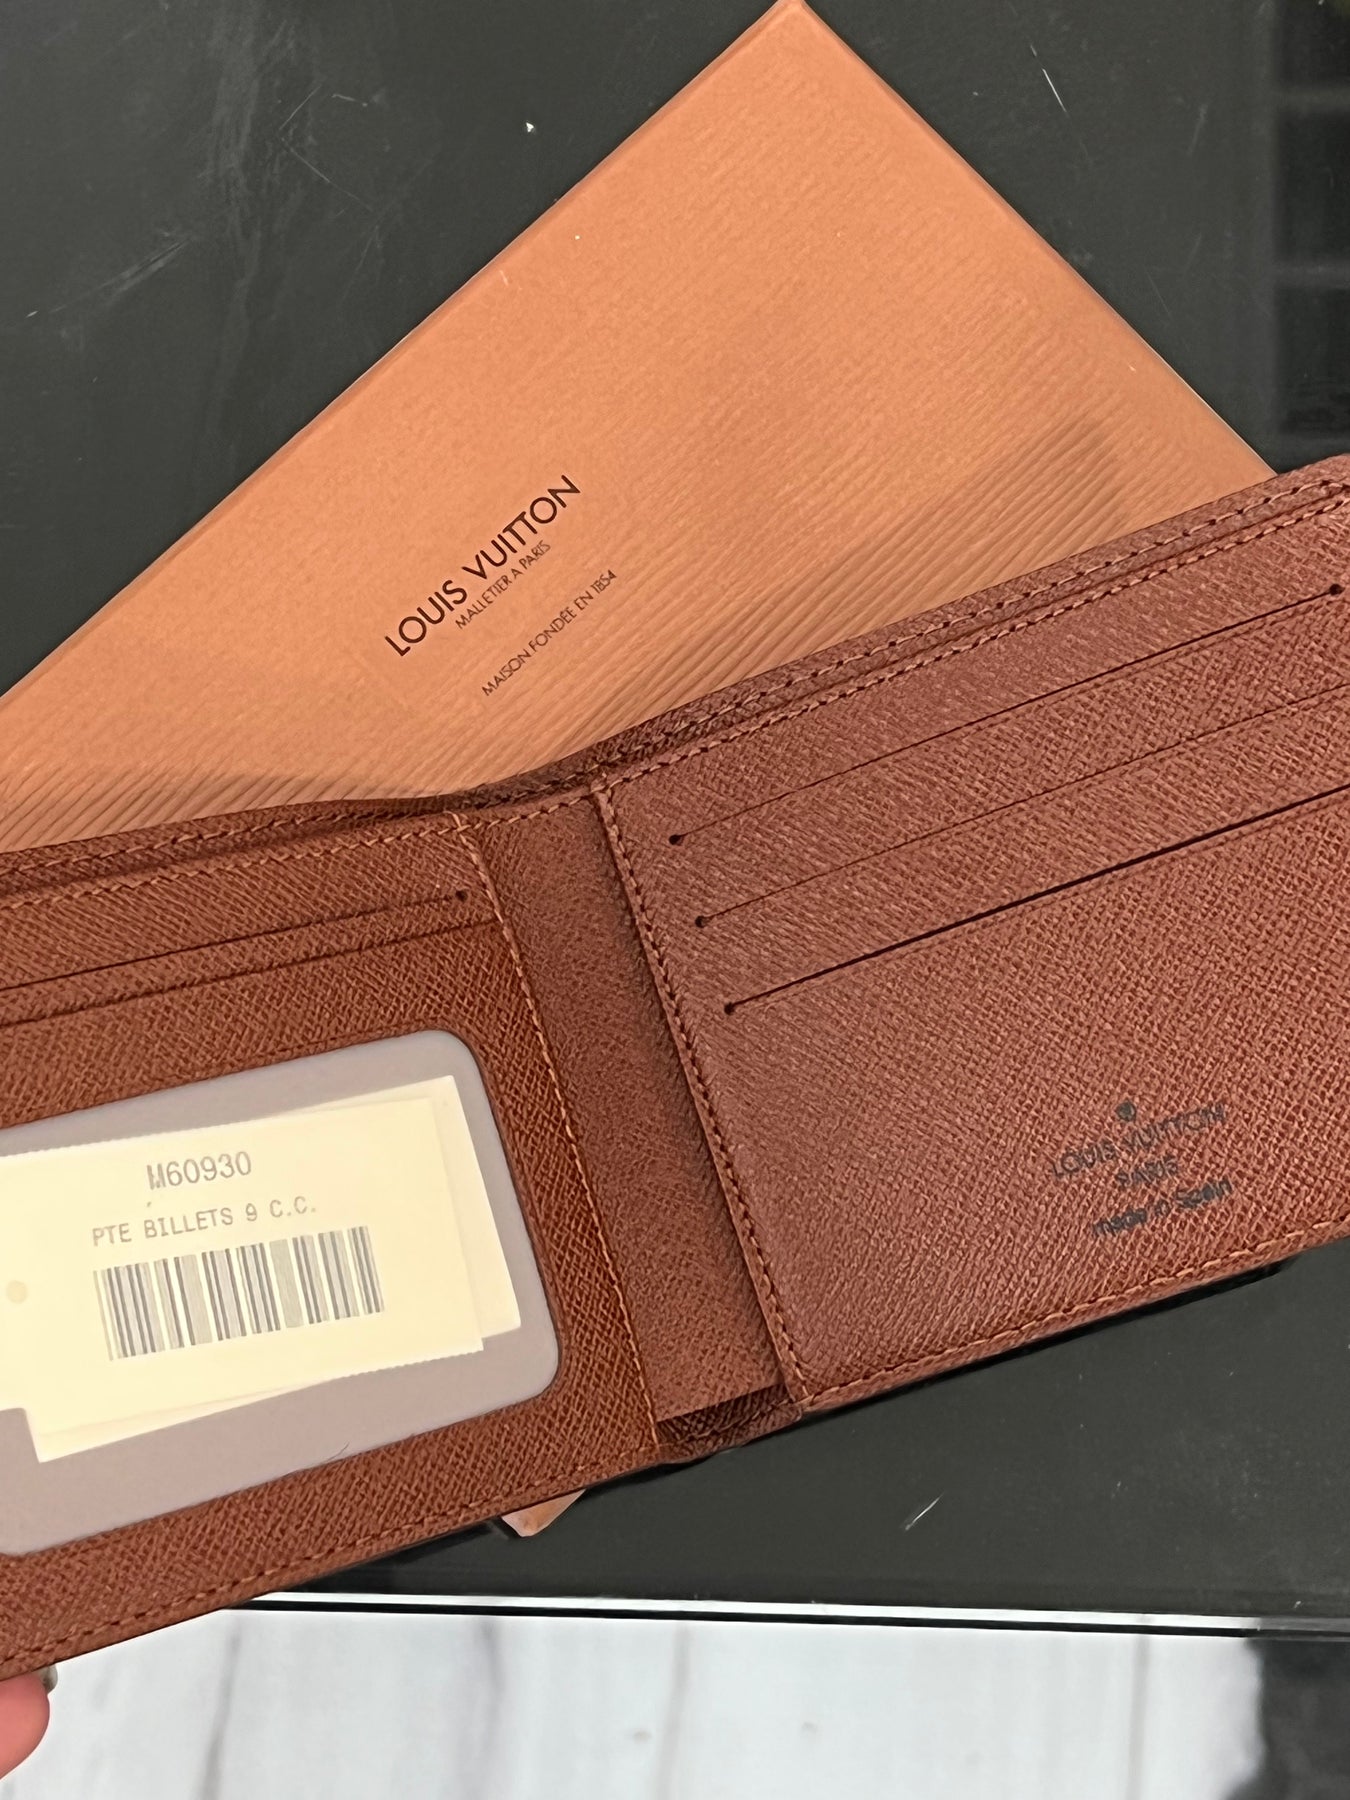 Louis Vuitton Malletier Card Holder Wallet - Monogram